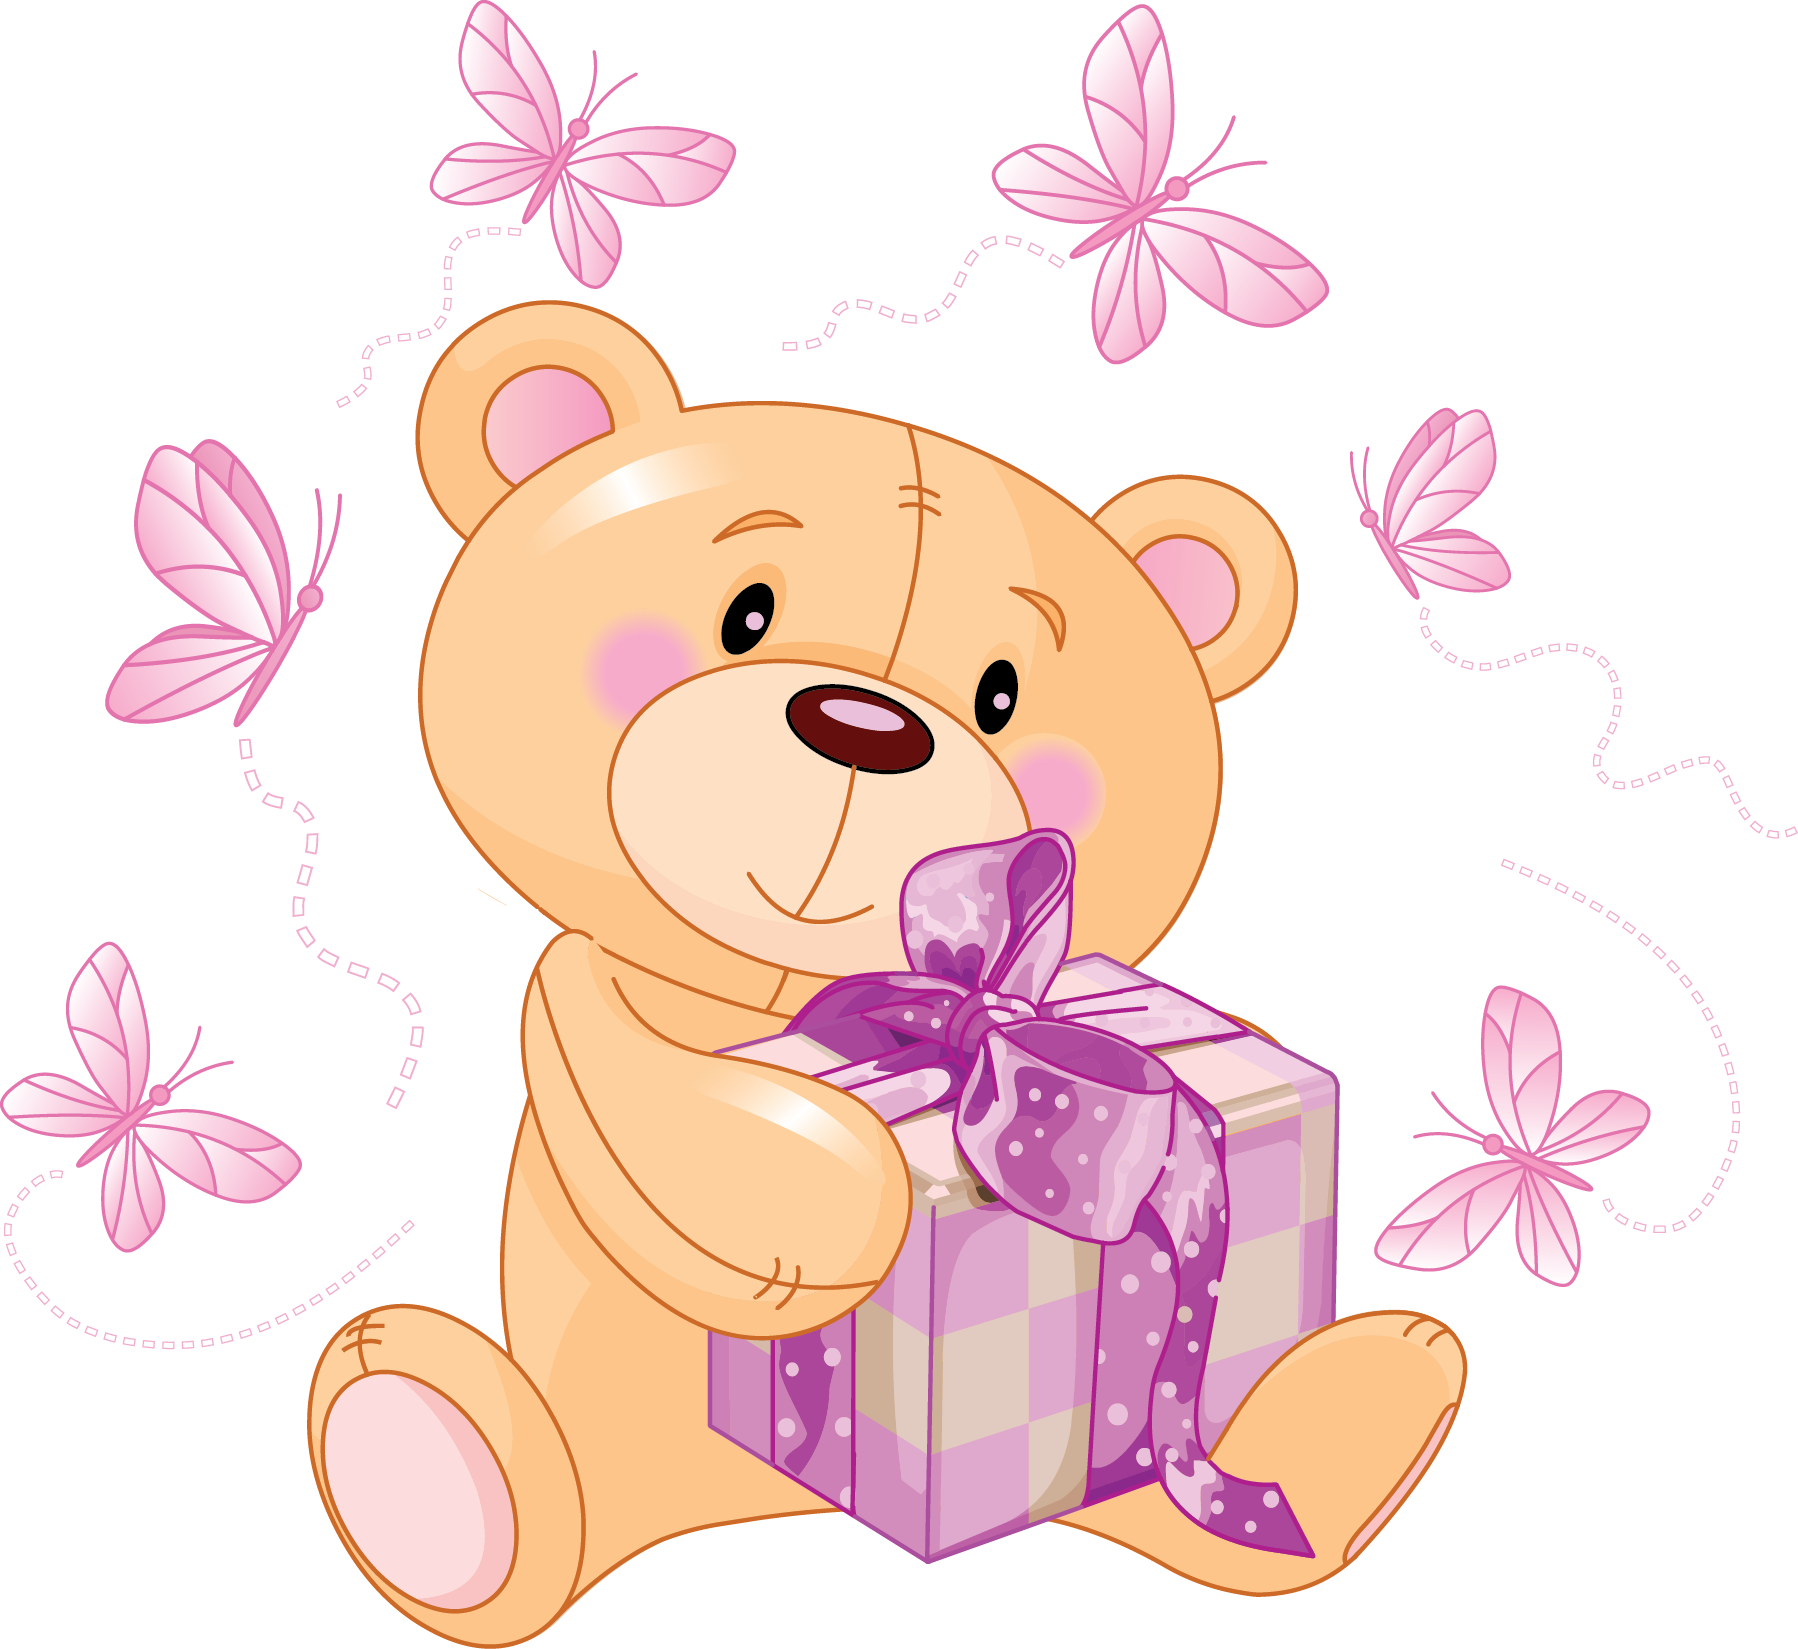 Teddy Bear Toy - Cute Animated Teddy Bears (1798x1649)